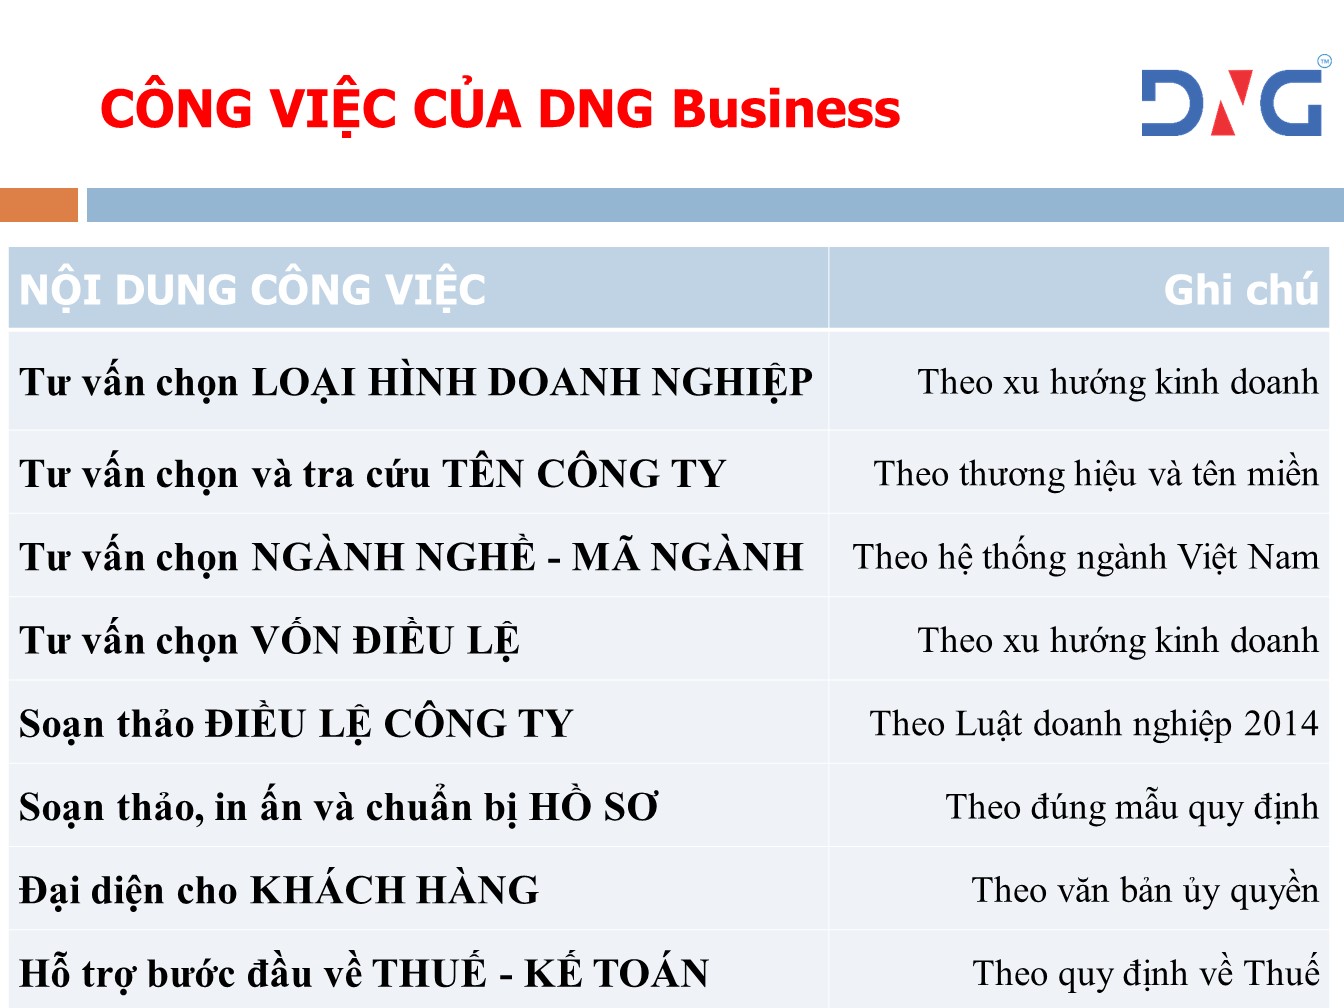 Dịch vụ thành lập công ty tại Hồ Chí Minh